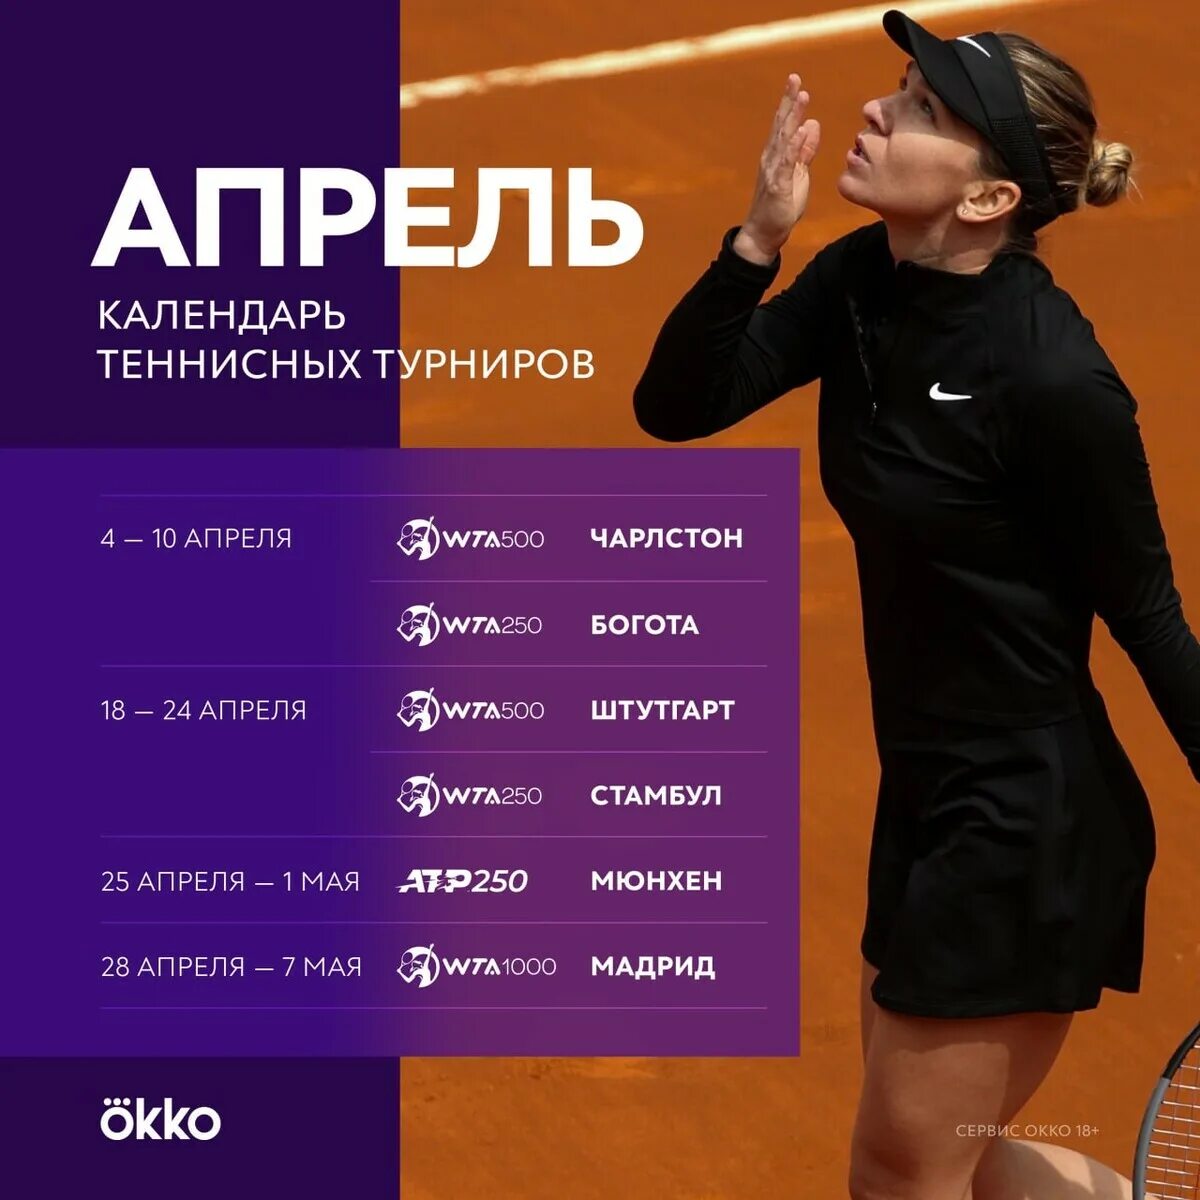 Большой теннис афиша. Календарь теннисных турниров. Теннисный турнир афиша. Календарь теннисных турниров 2021 WTA.